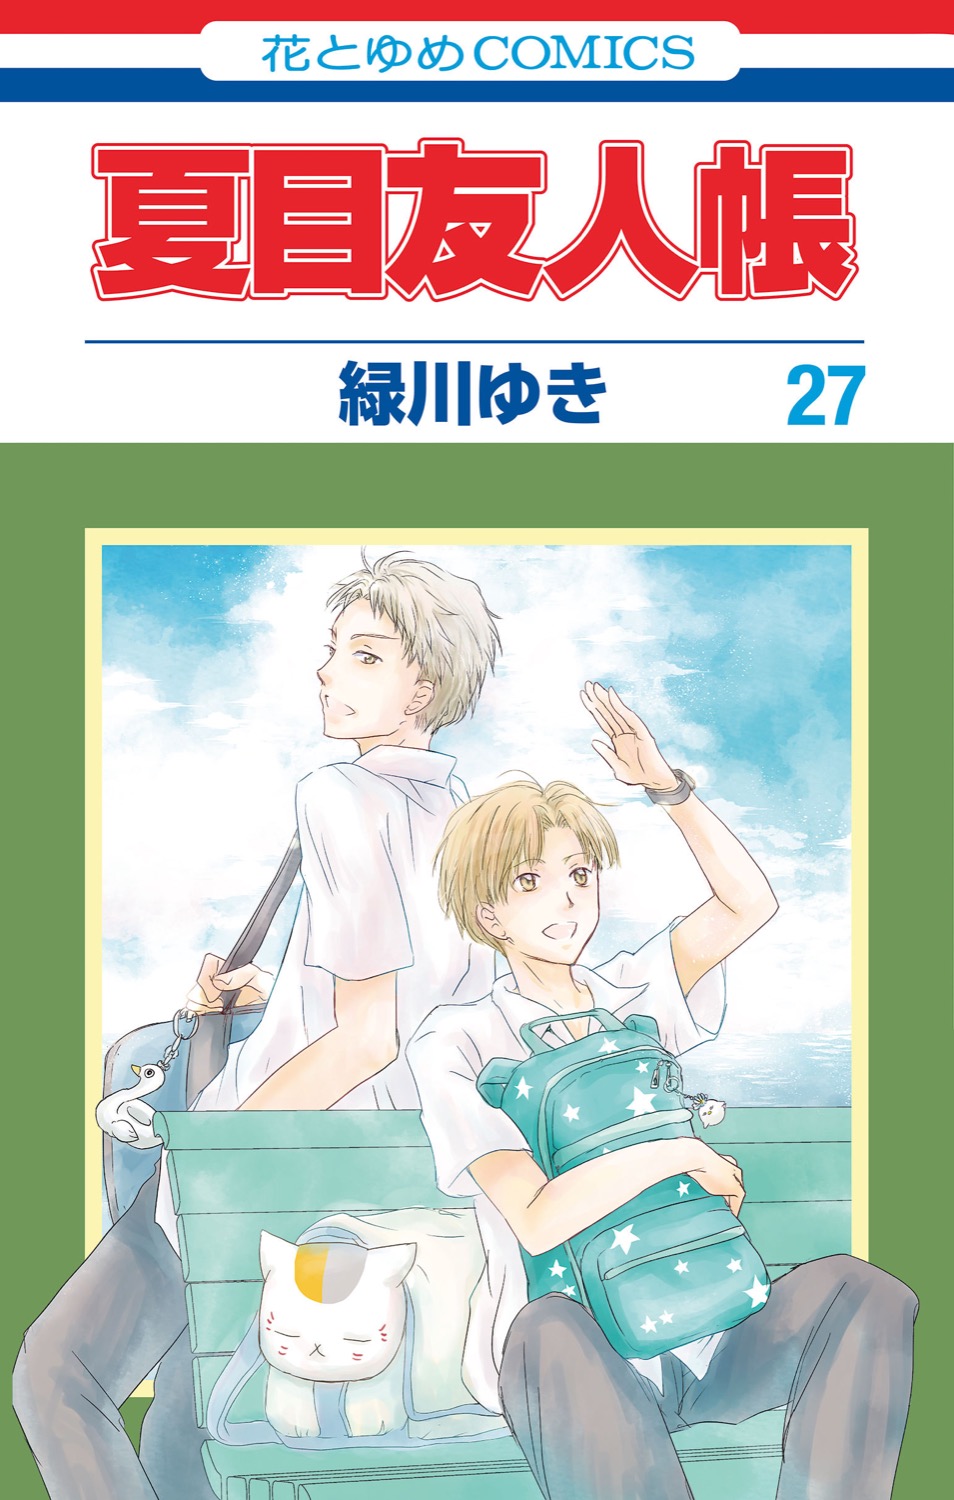 夏目友人帳 最新刊28巻 5月2日にストラップ付き特装版と同時発売